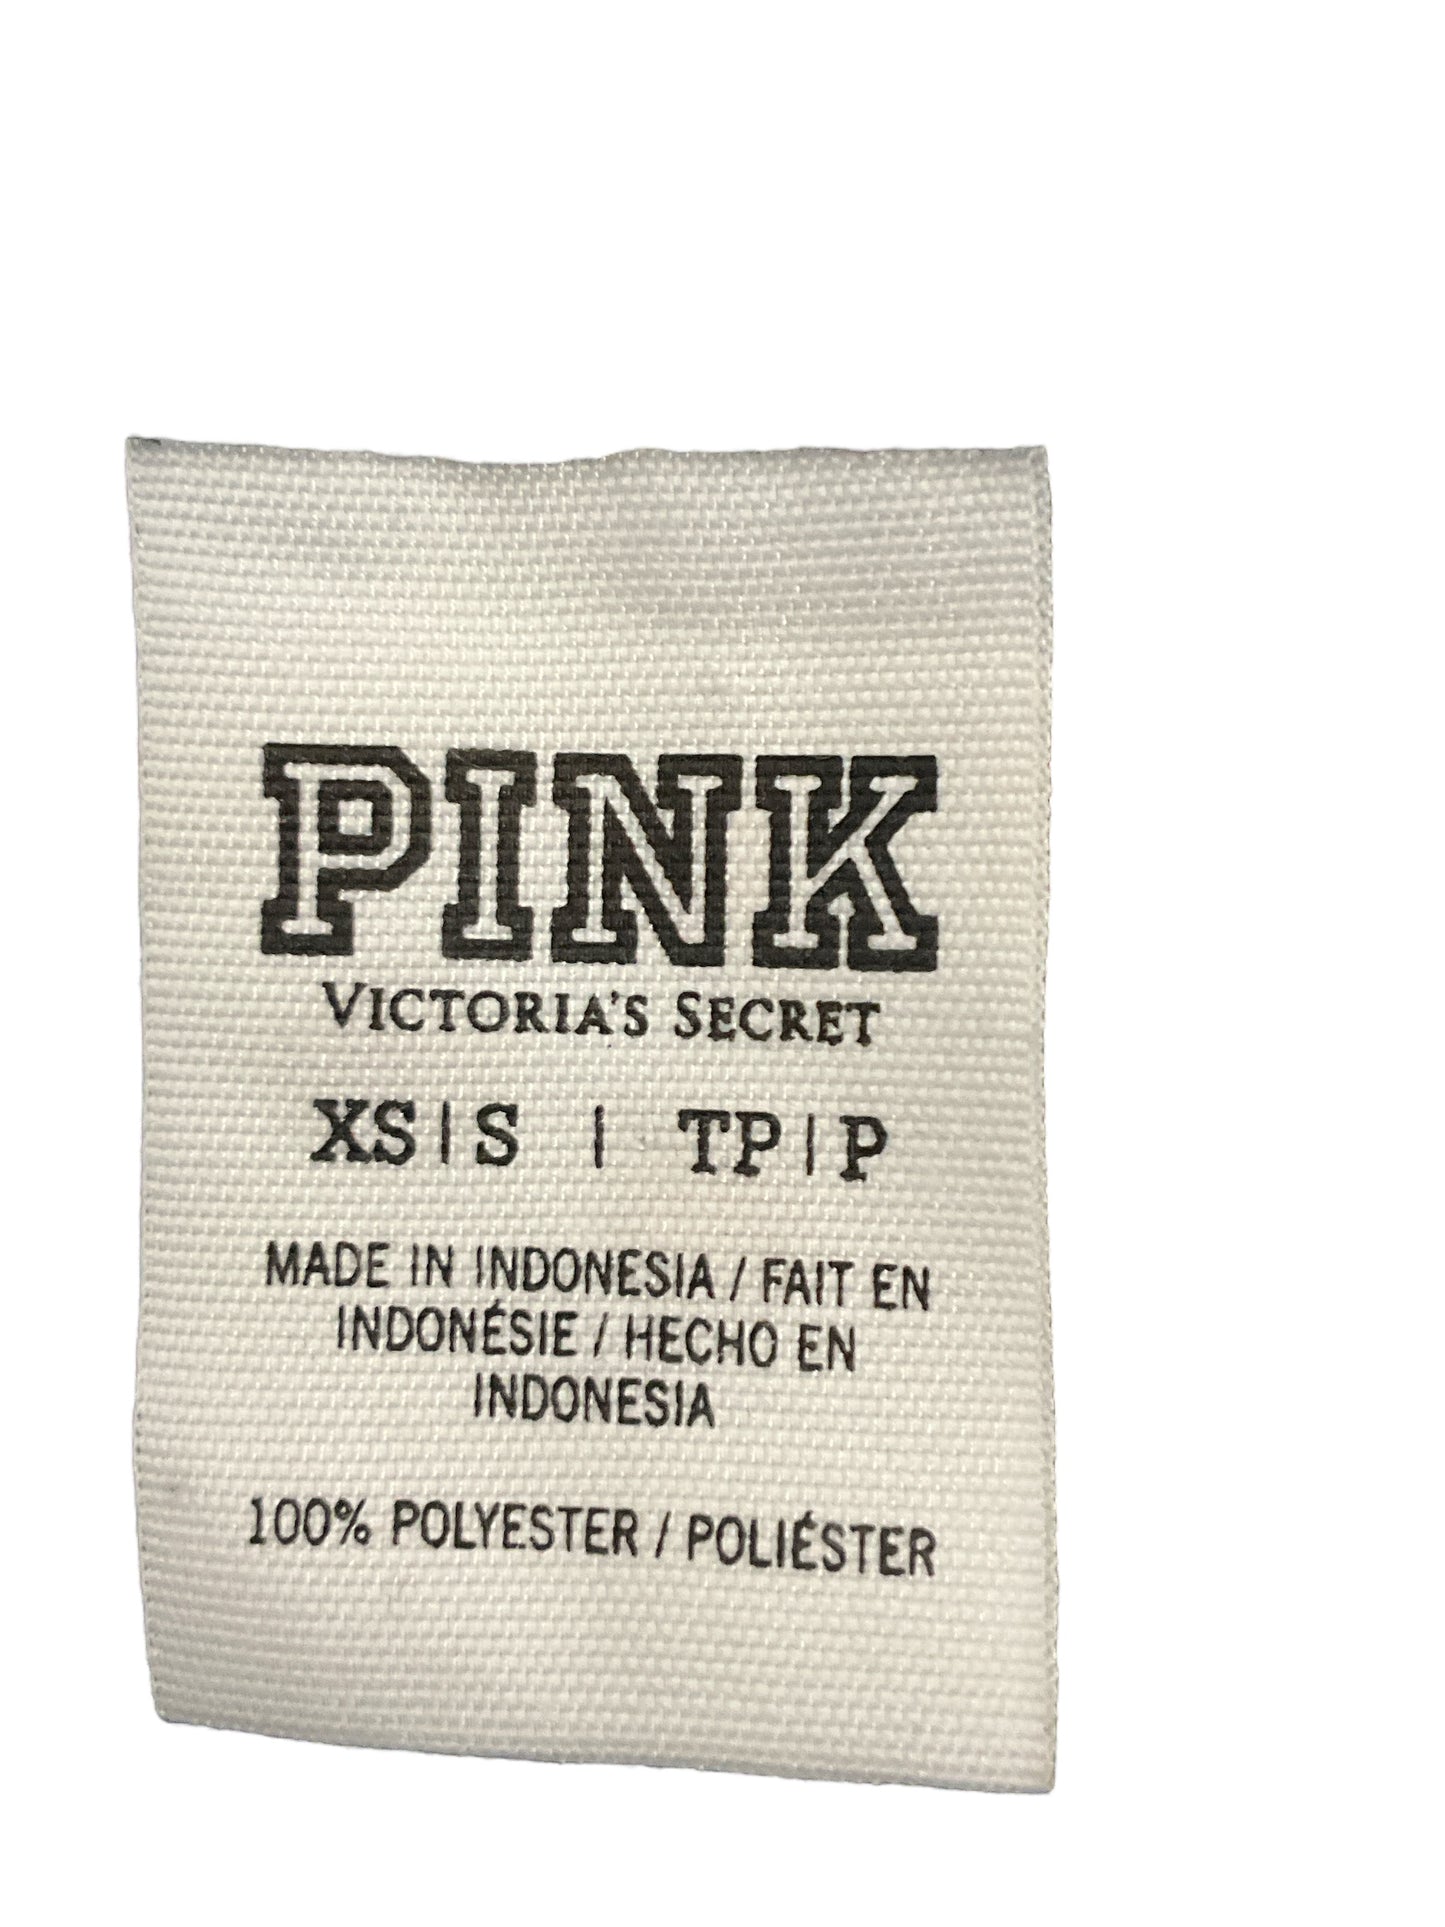 Jacket Windbreaker By Pink  Size: Xs